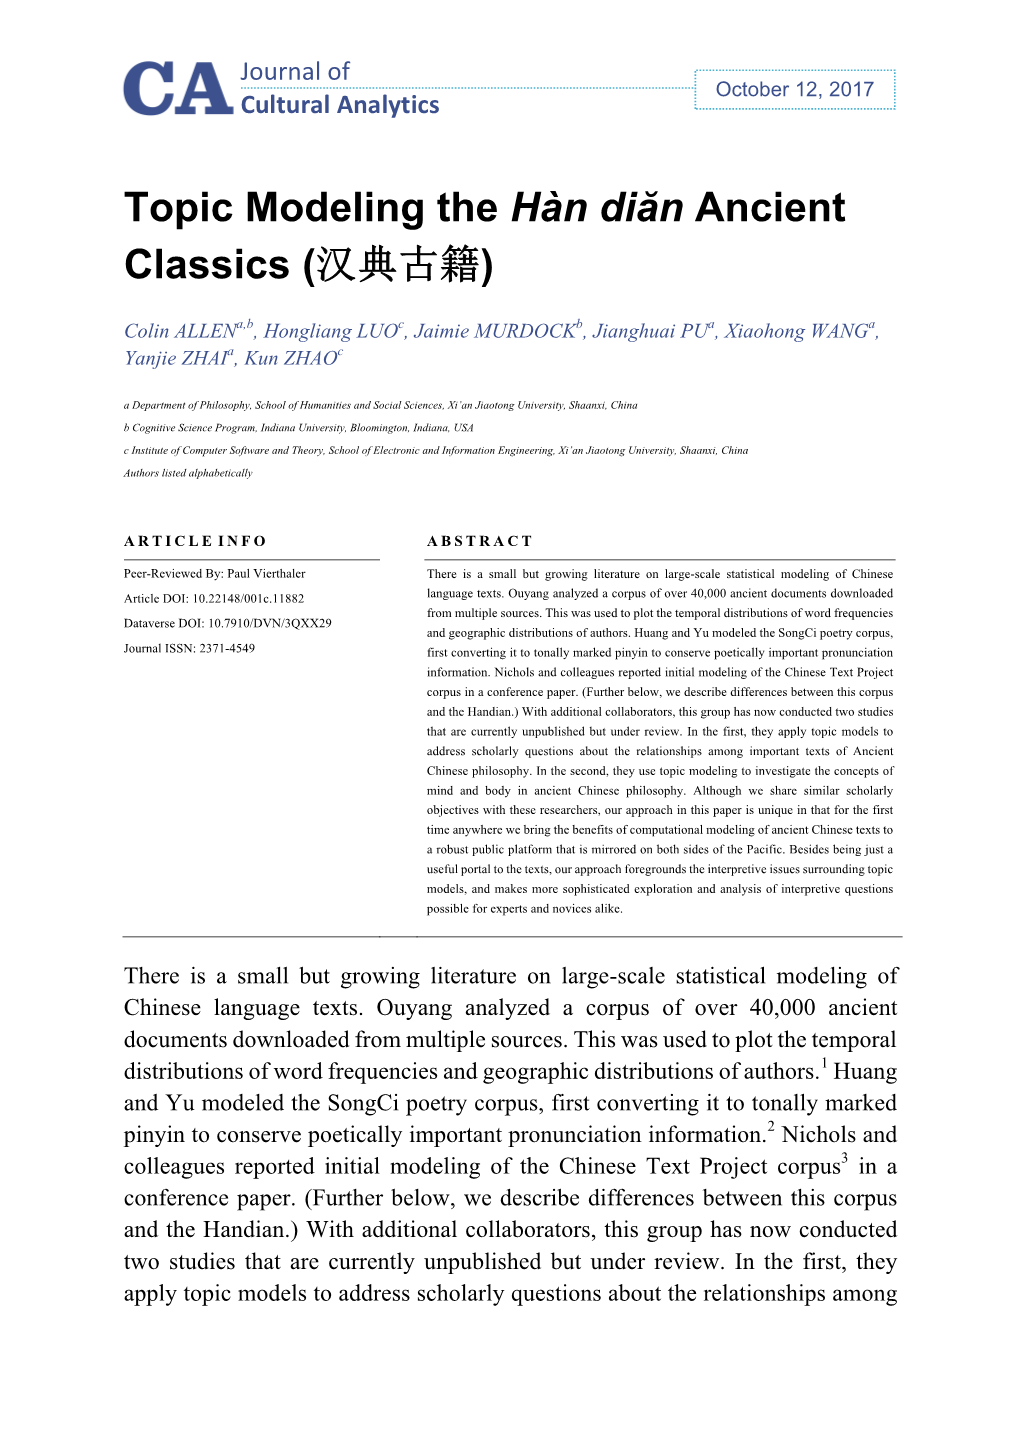 Topic Modeling the Hàn Diăn Ancient Classics (汉典古籍)